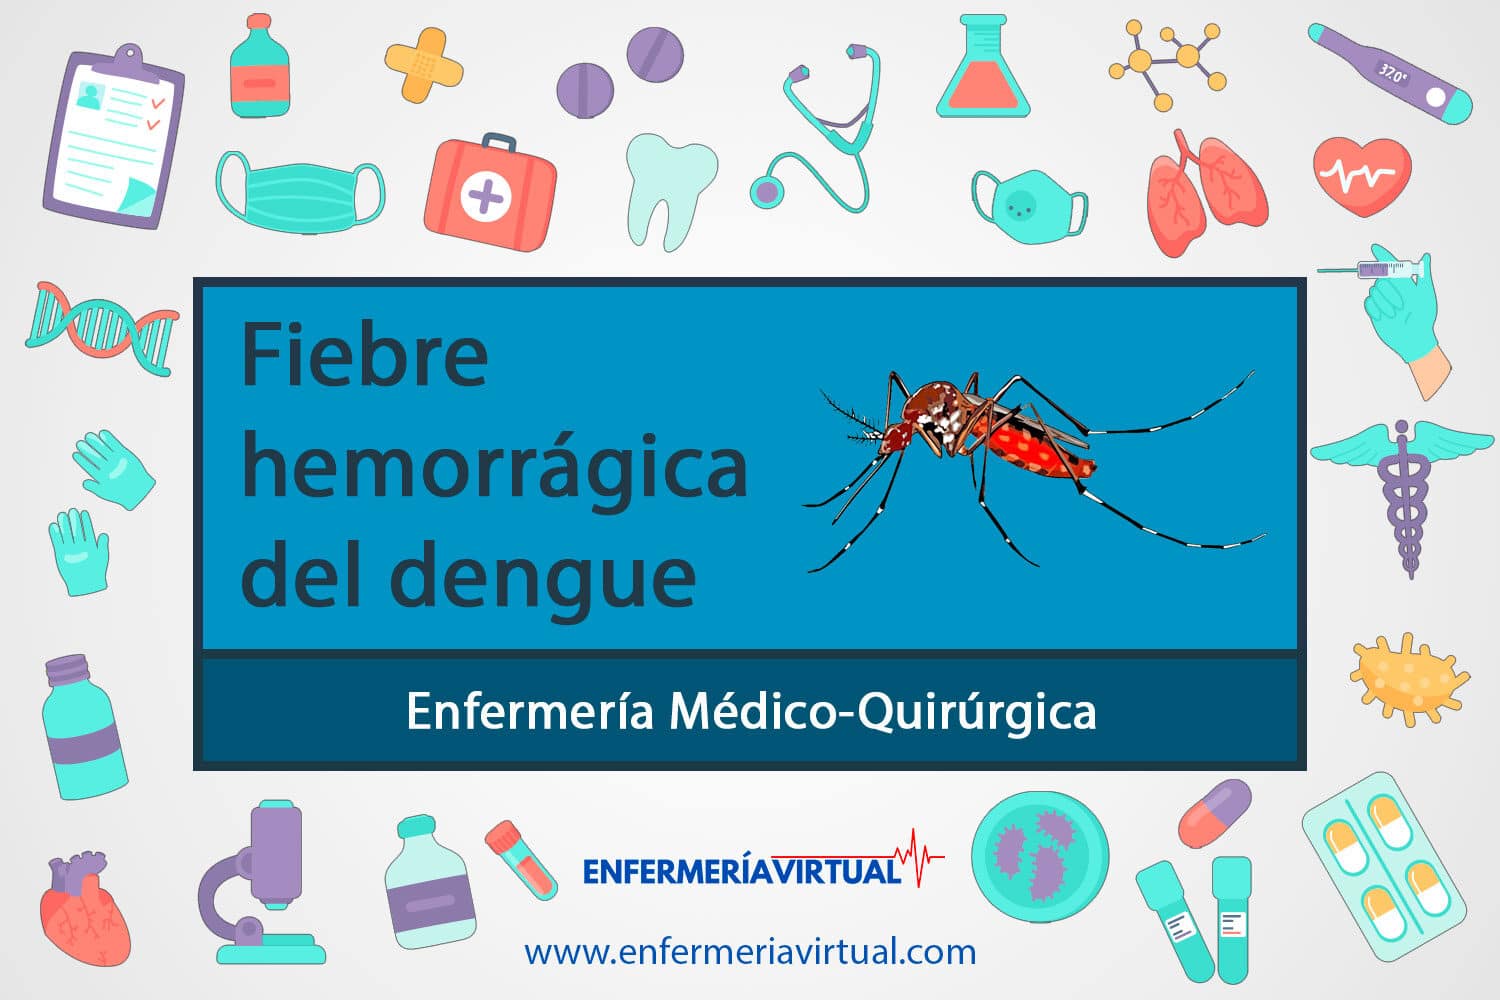 Fiebre hemorrágica del dengue